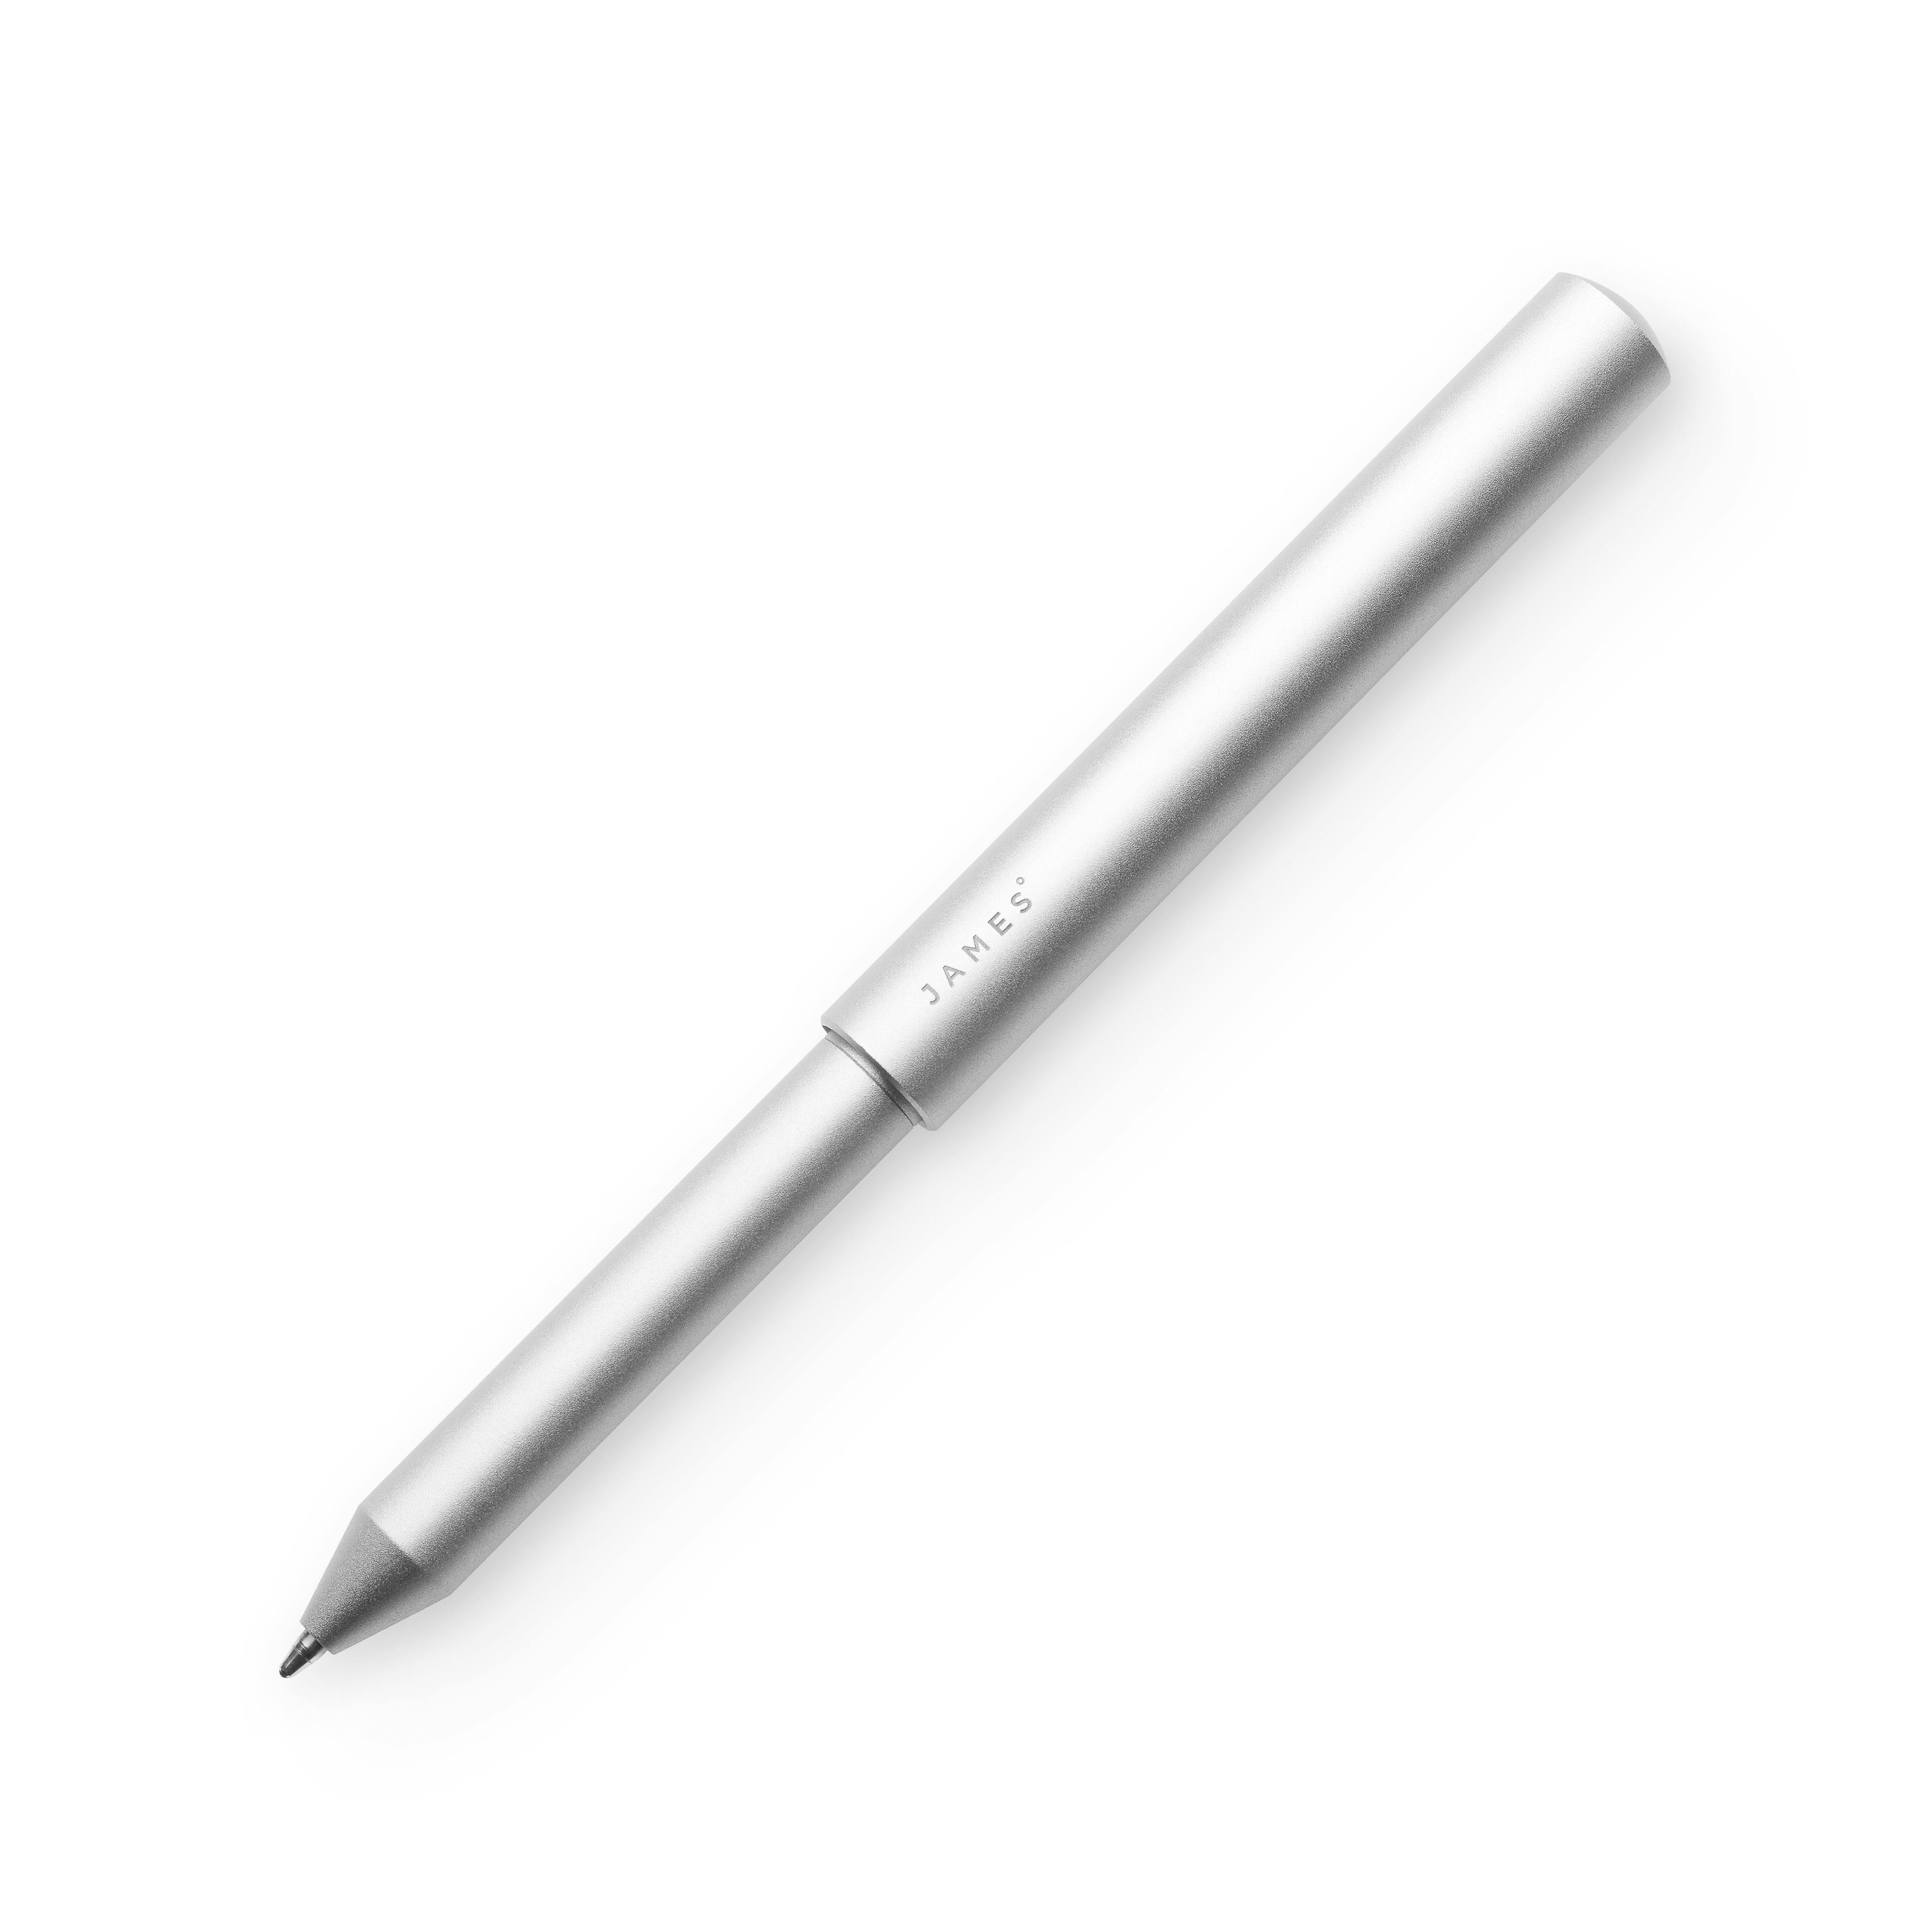 The Stilwell EDC Pen